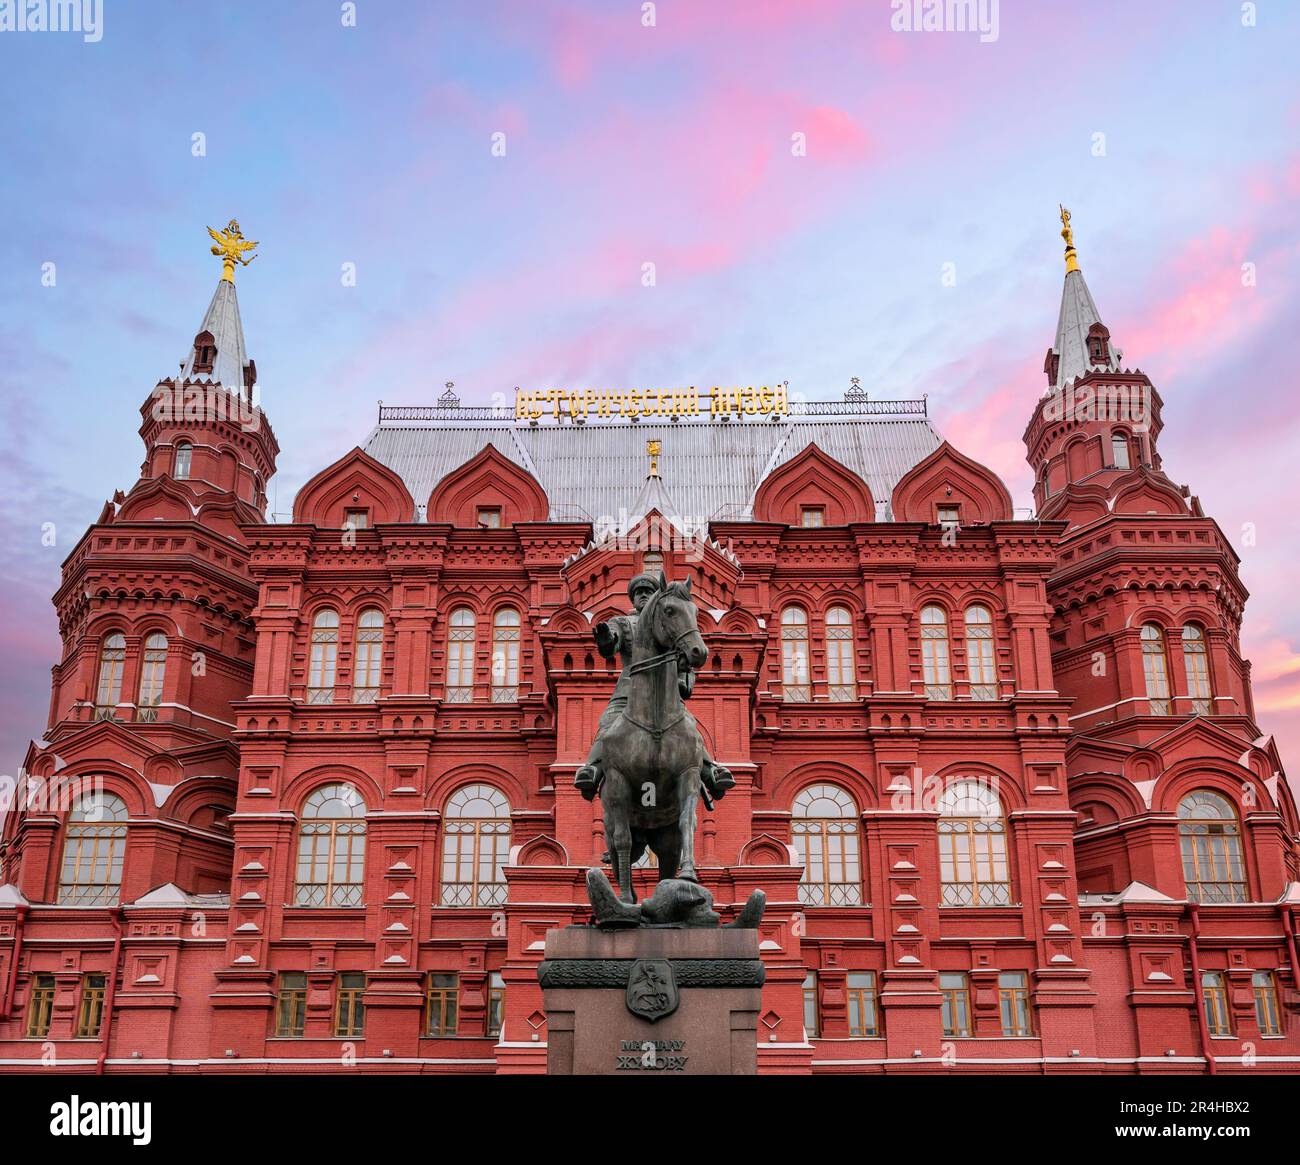 Museo Storico Del Grande Stato E Statua Equestre Del Maresciallo Zhukov, Piazza Manezhnaya, Mosca, Federazione Russa Foto Stock